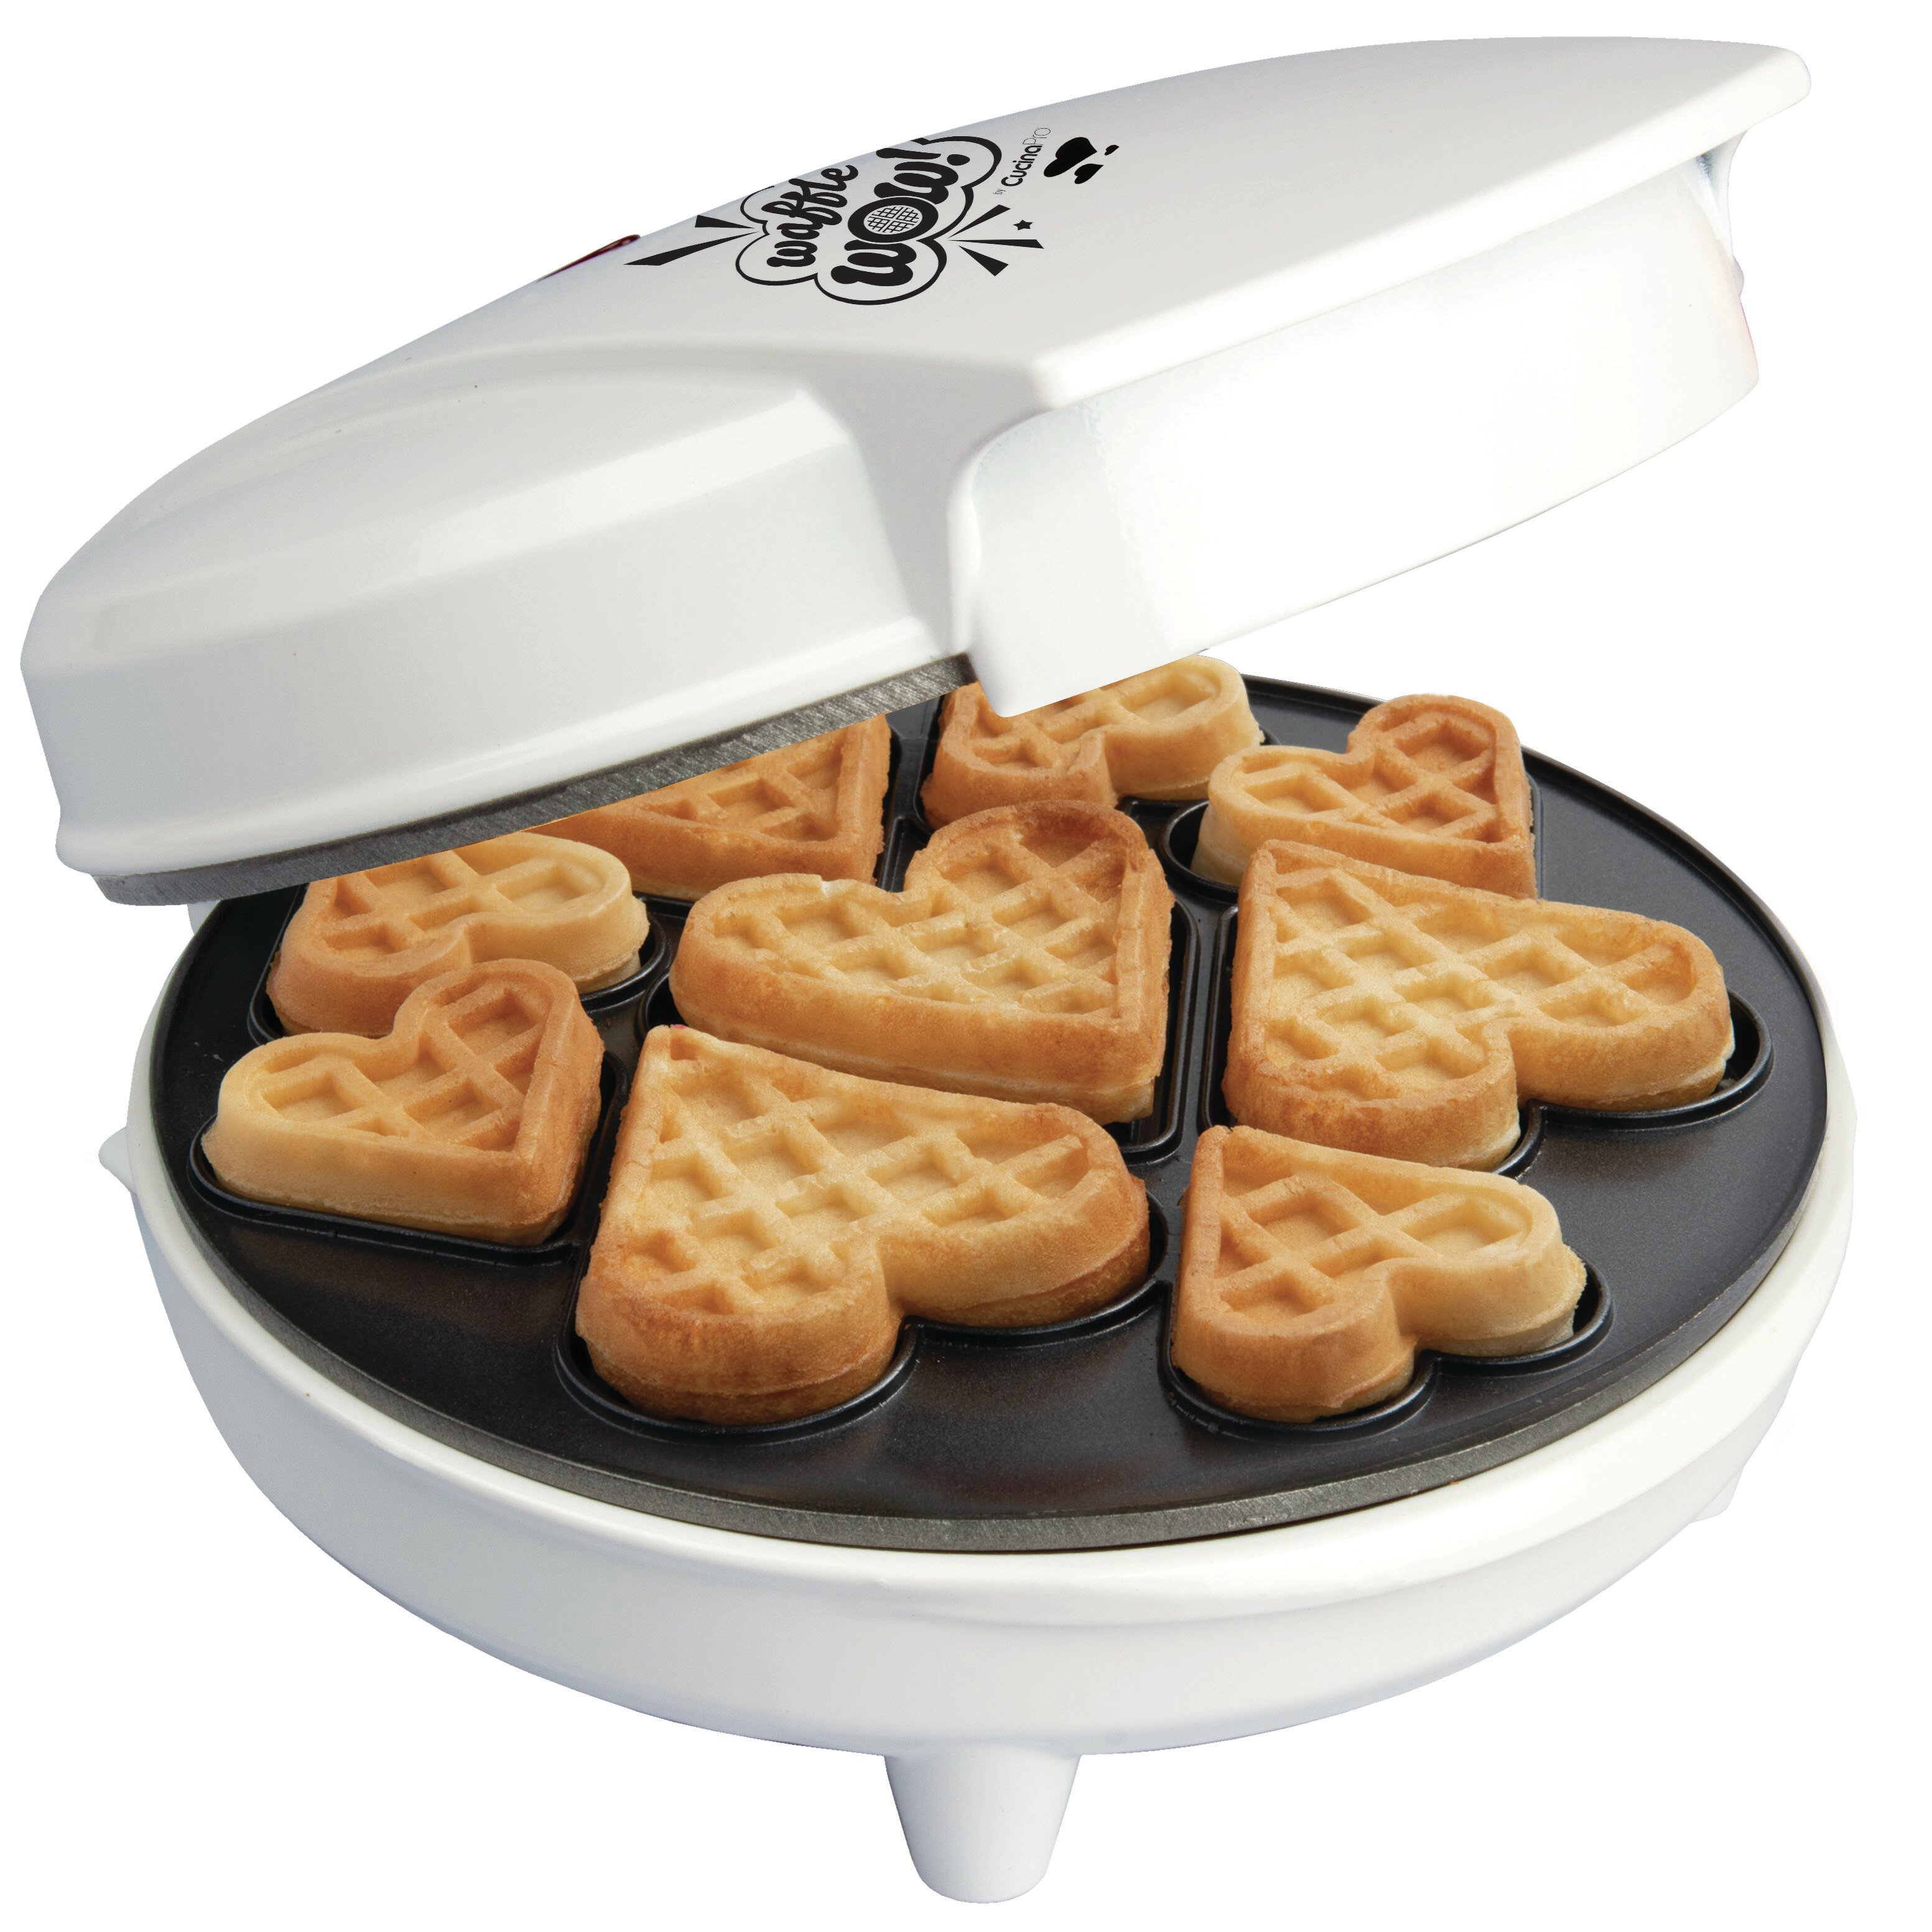 https://assets.wfcdn.com/im/19468111/compr-r85/1450/145009479/cucinapro-25-heart-non-stick-waffle-maker.jpg